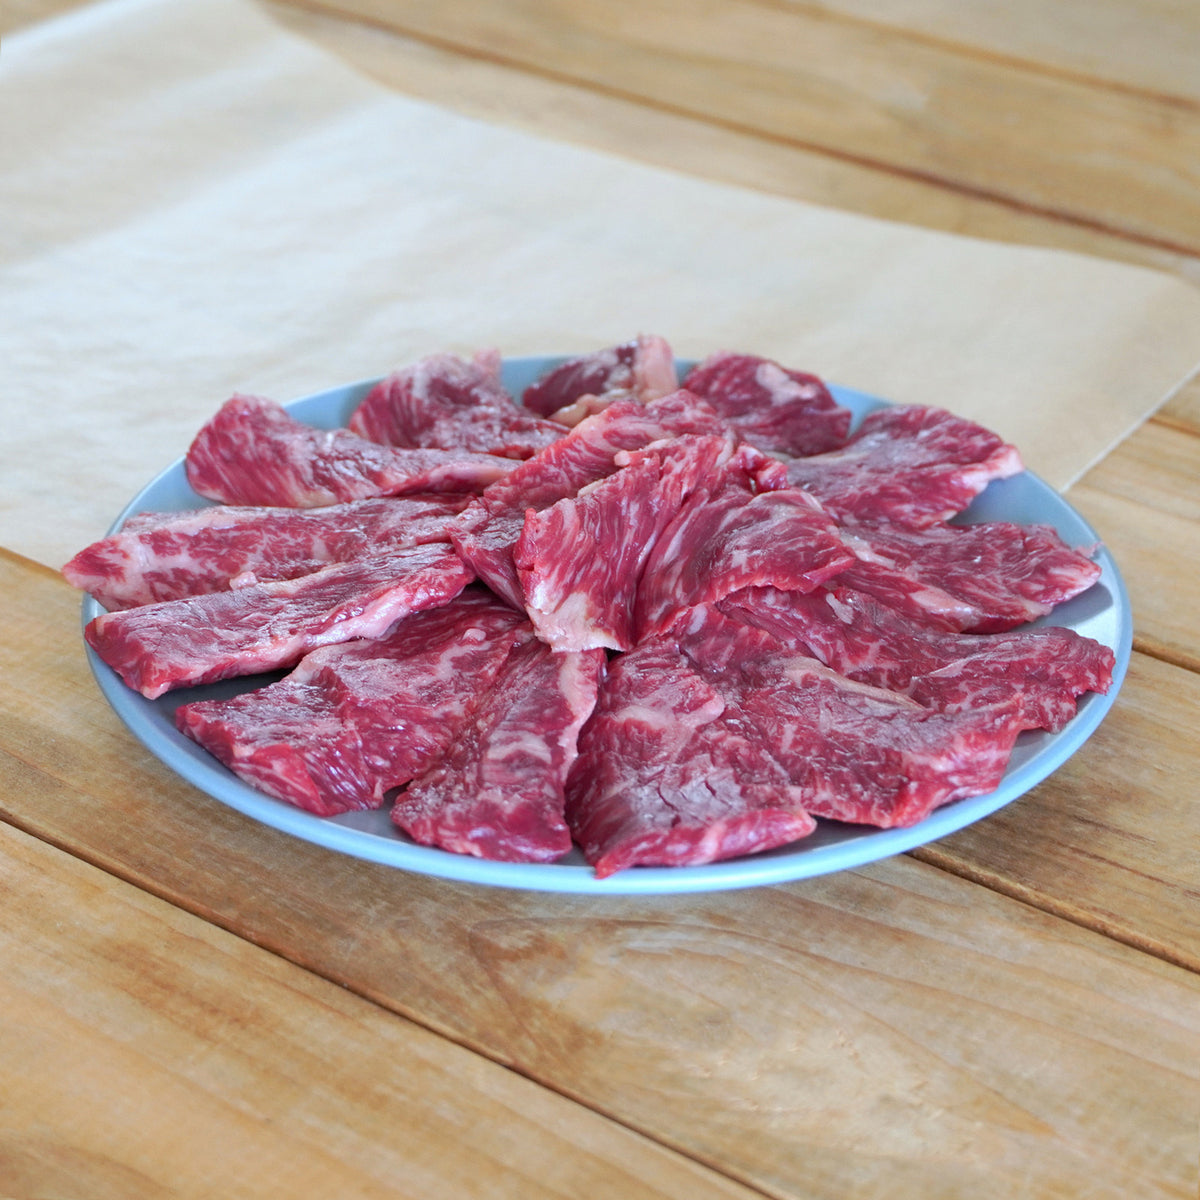 放牧 和牛 ハラミ 焼肉用 スライス 牛肉 国産 遺伝子組換え不使用 (300g) ホライズンファームズ